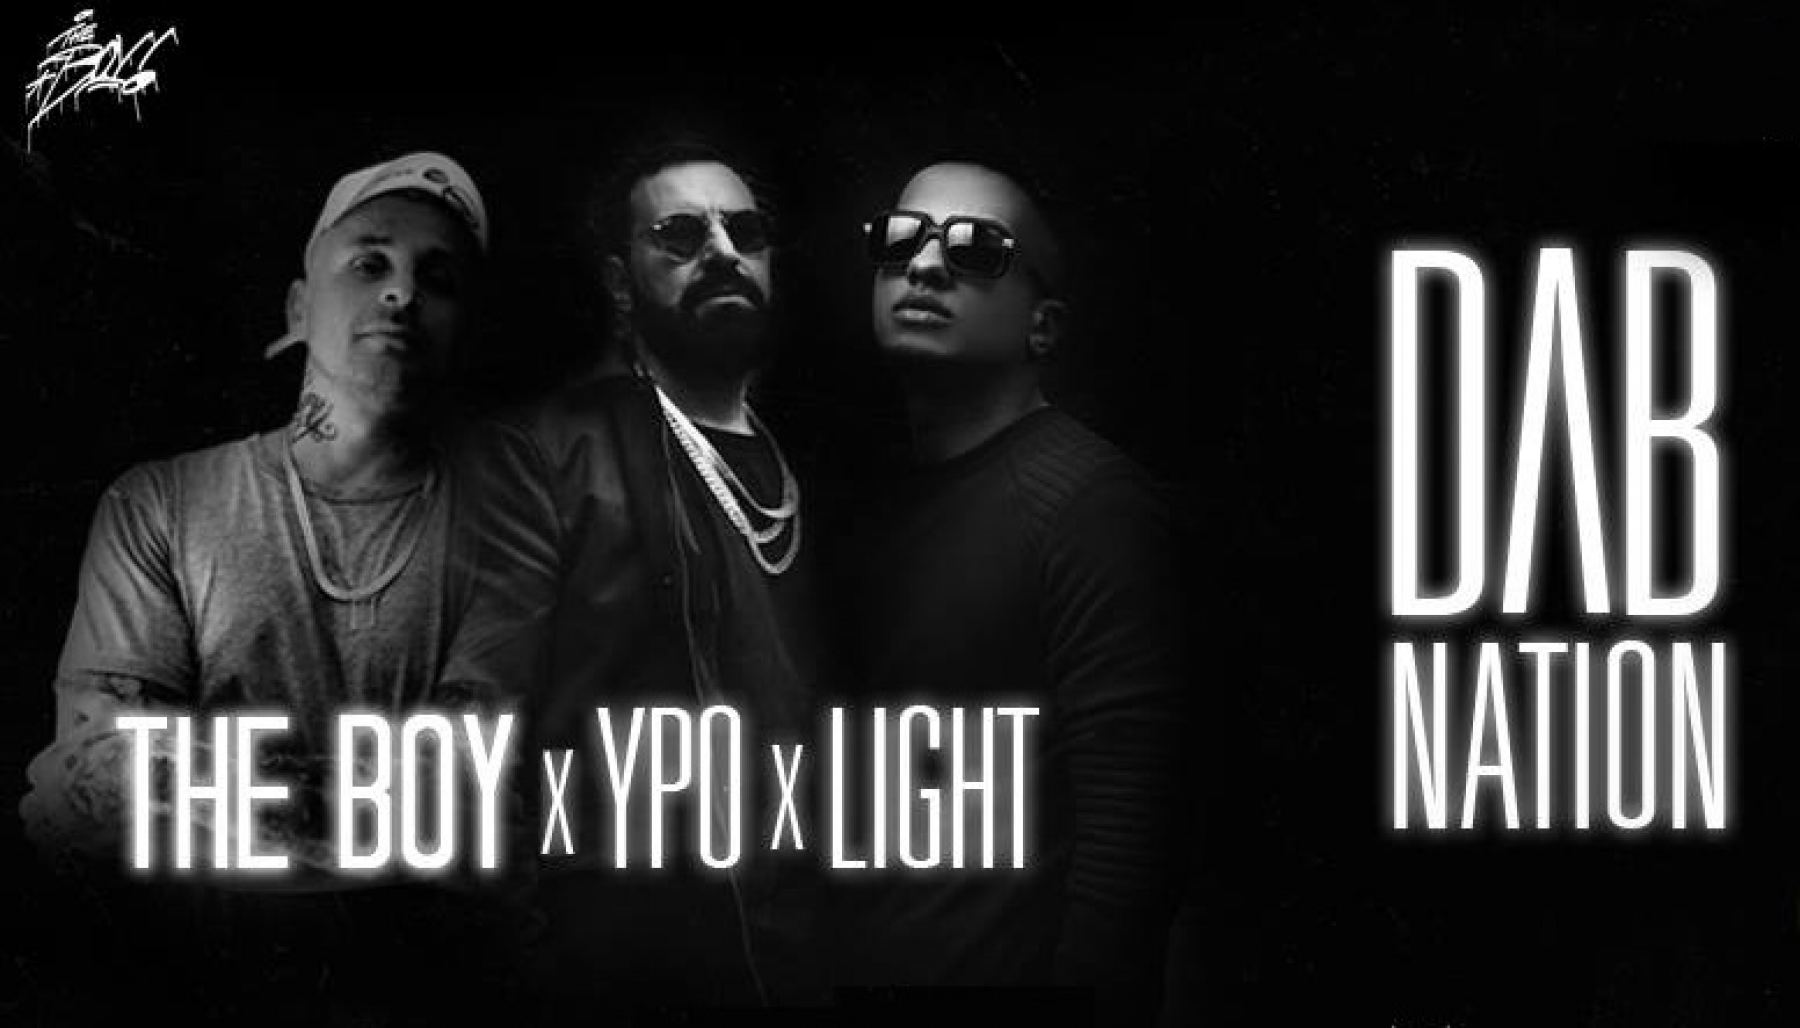 Σήμερα: Ypo, Light και Dj The Boy στο La Playa στις Ράχες!